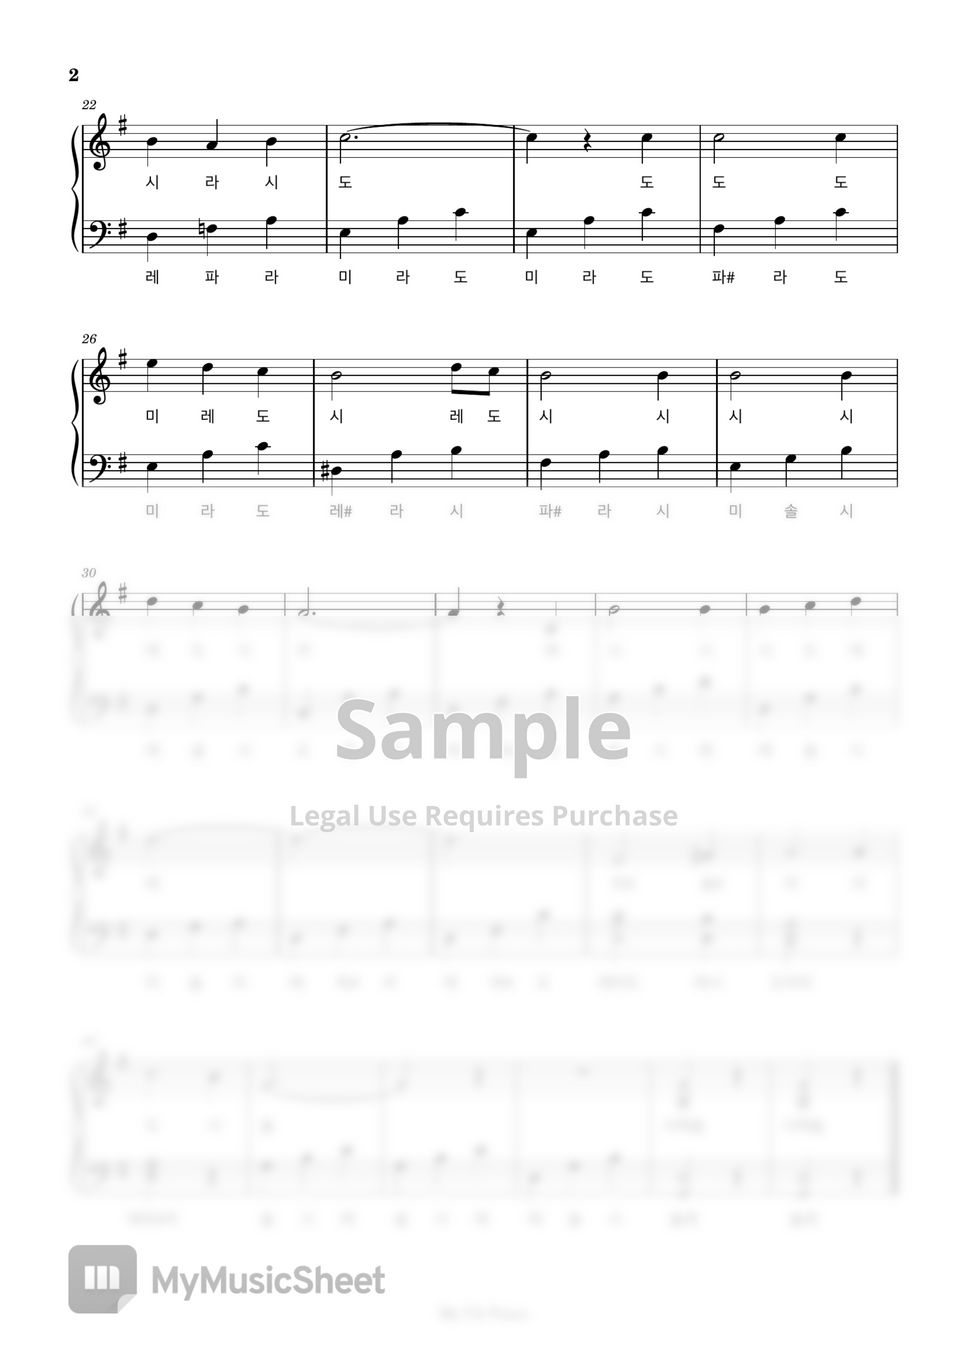 멘델스존 - 노래의 날개 위에 (쉬운계이름악보) by My Uk Piano